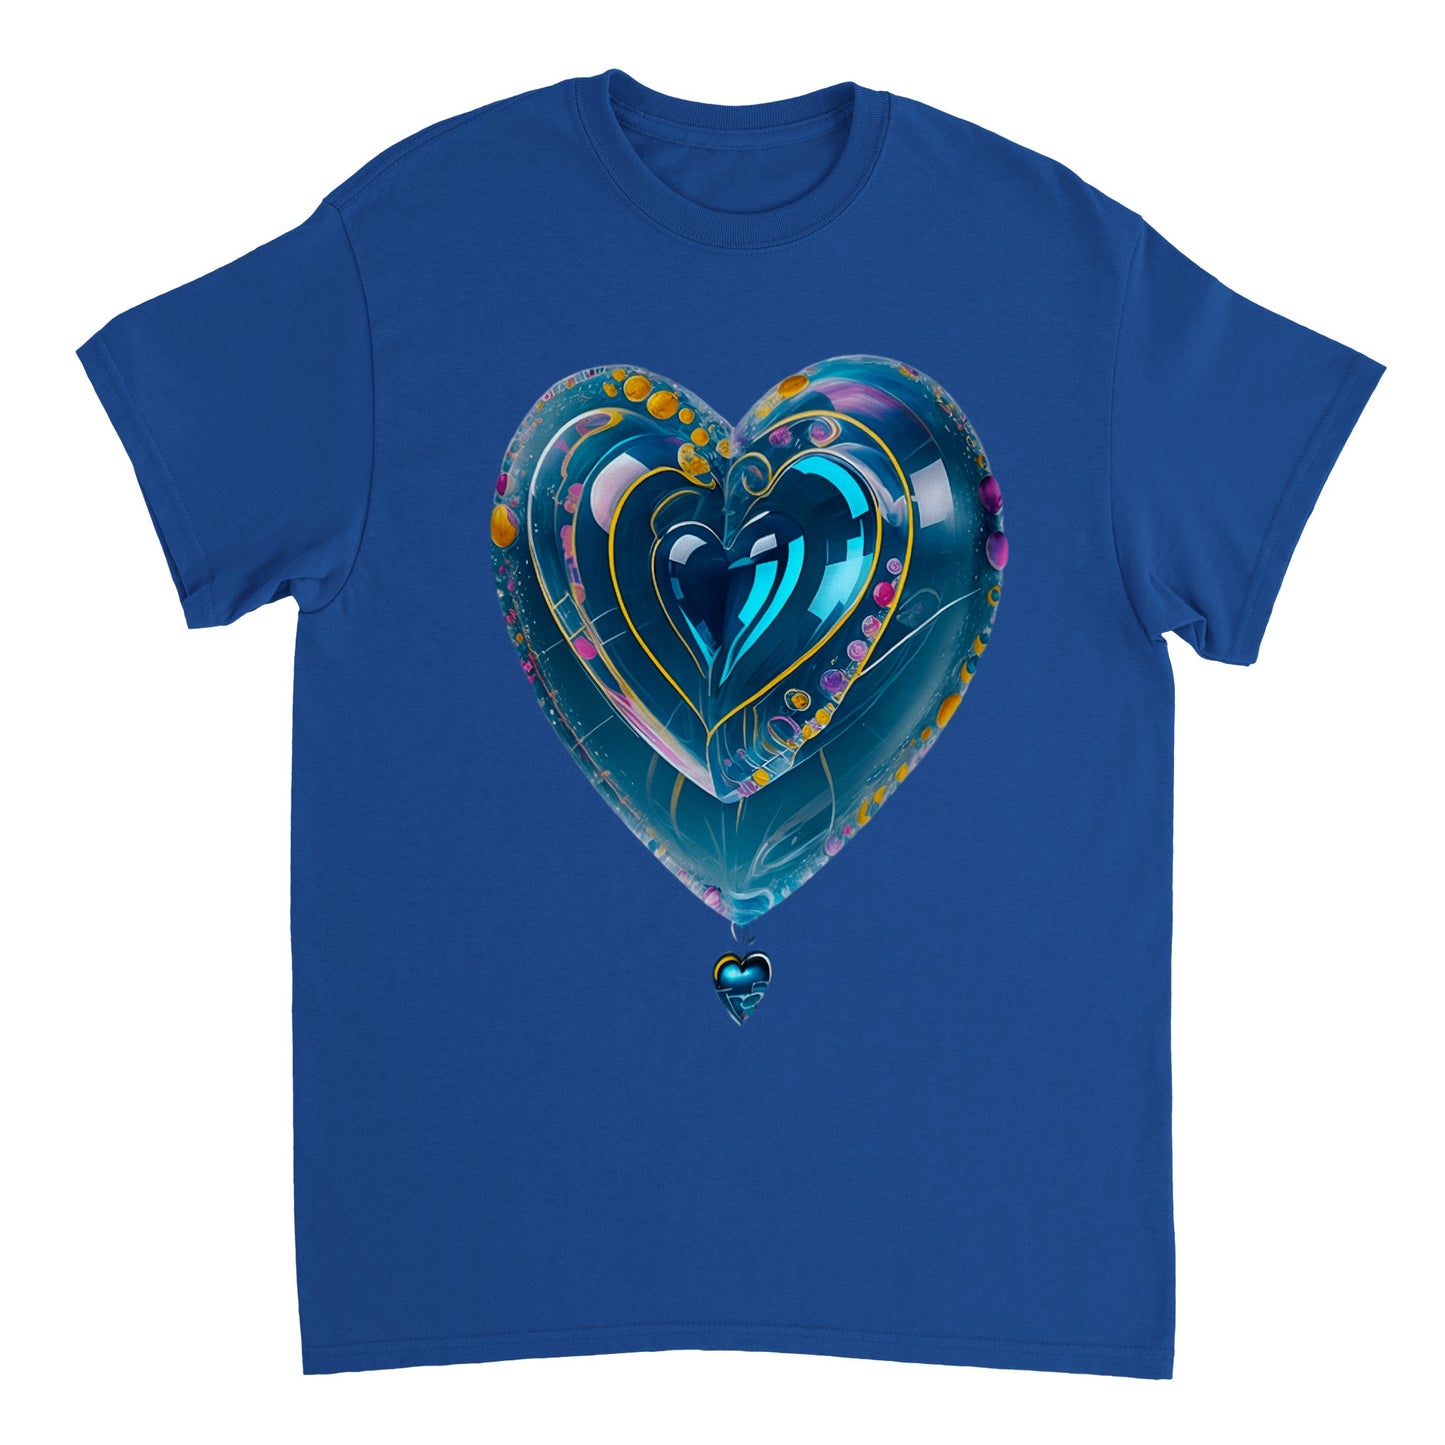 Love Heart - Heavyweight Unisex Crewneck T-shirt 71